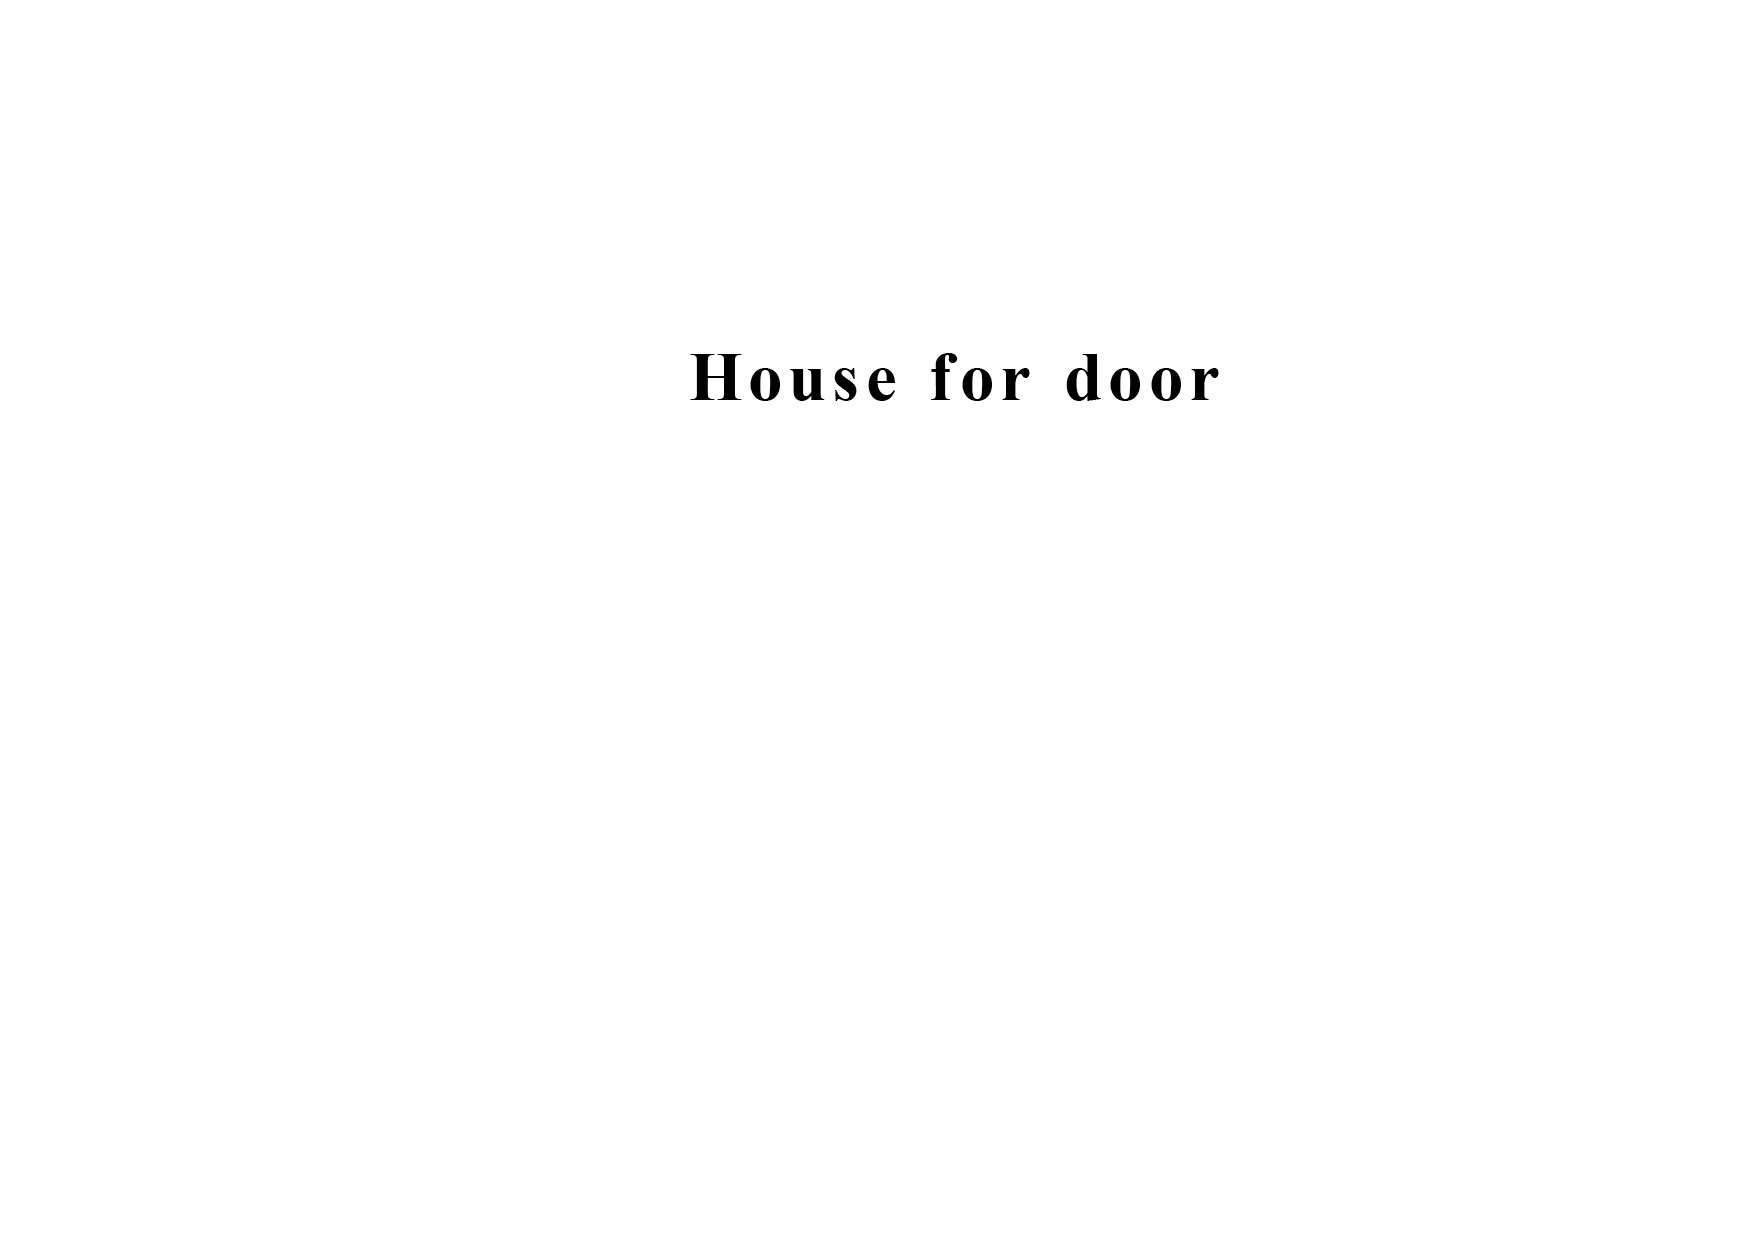 housefordoorという本の画像